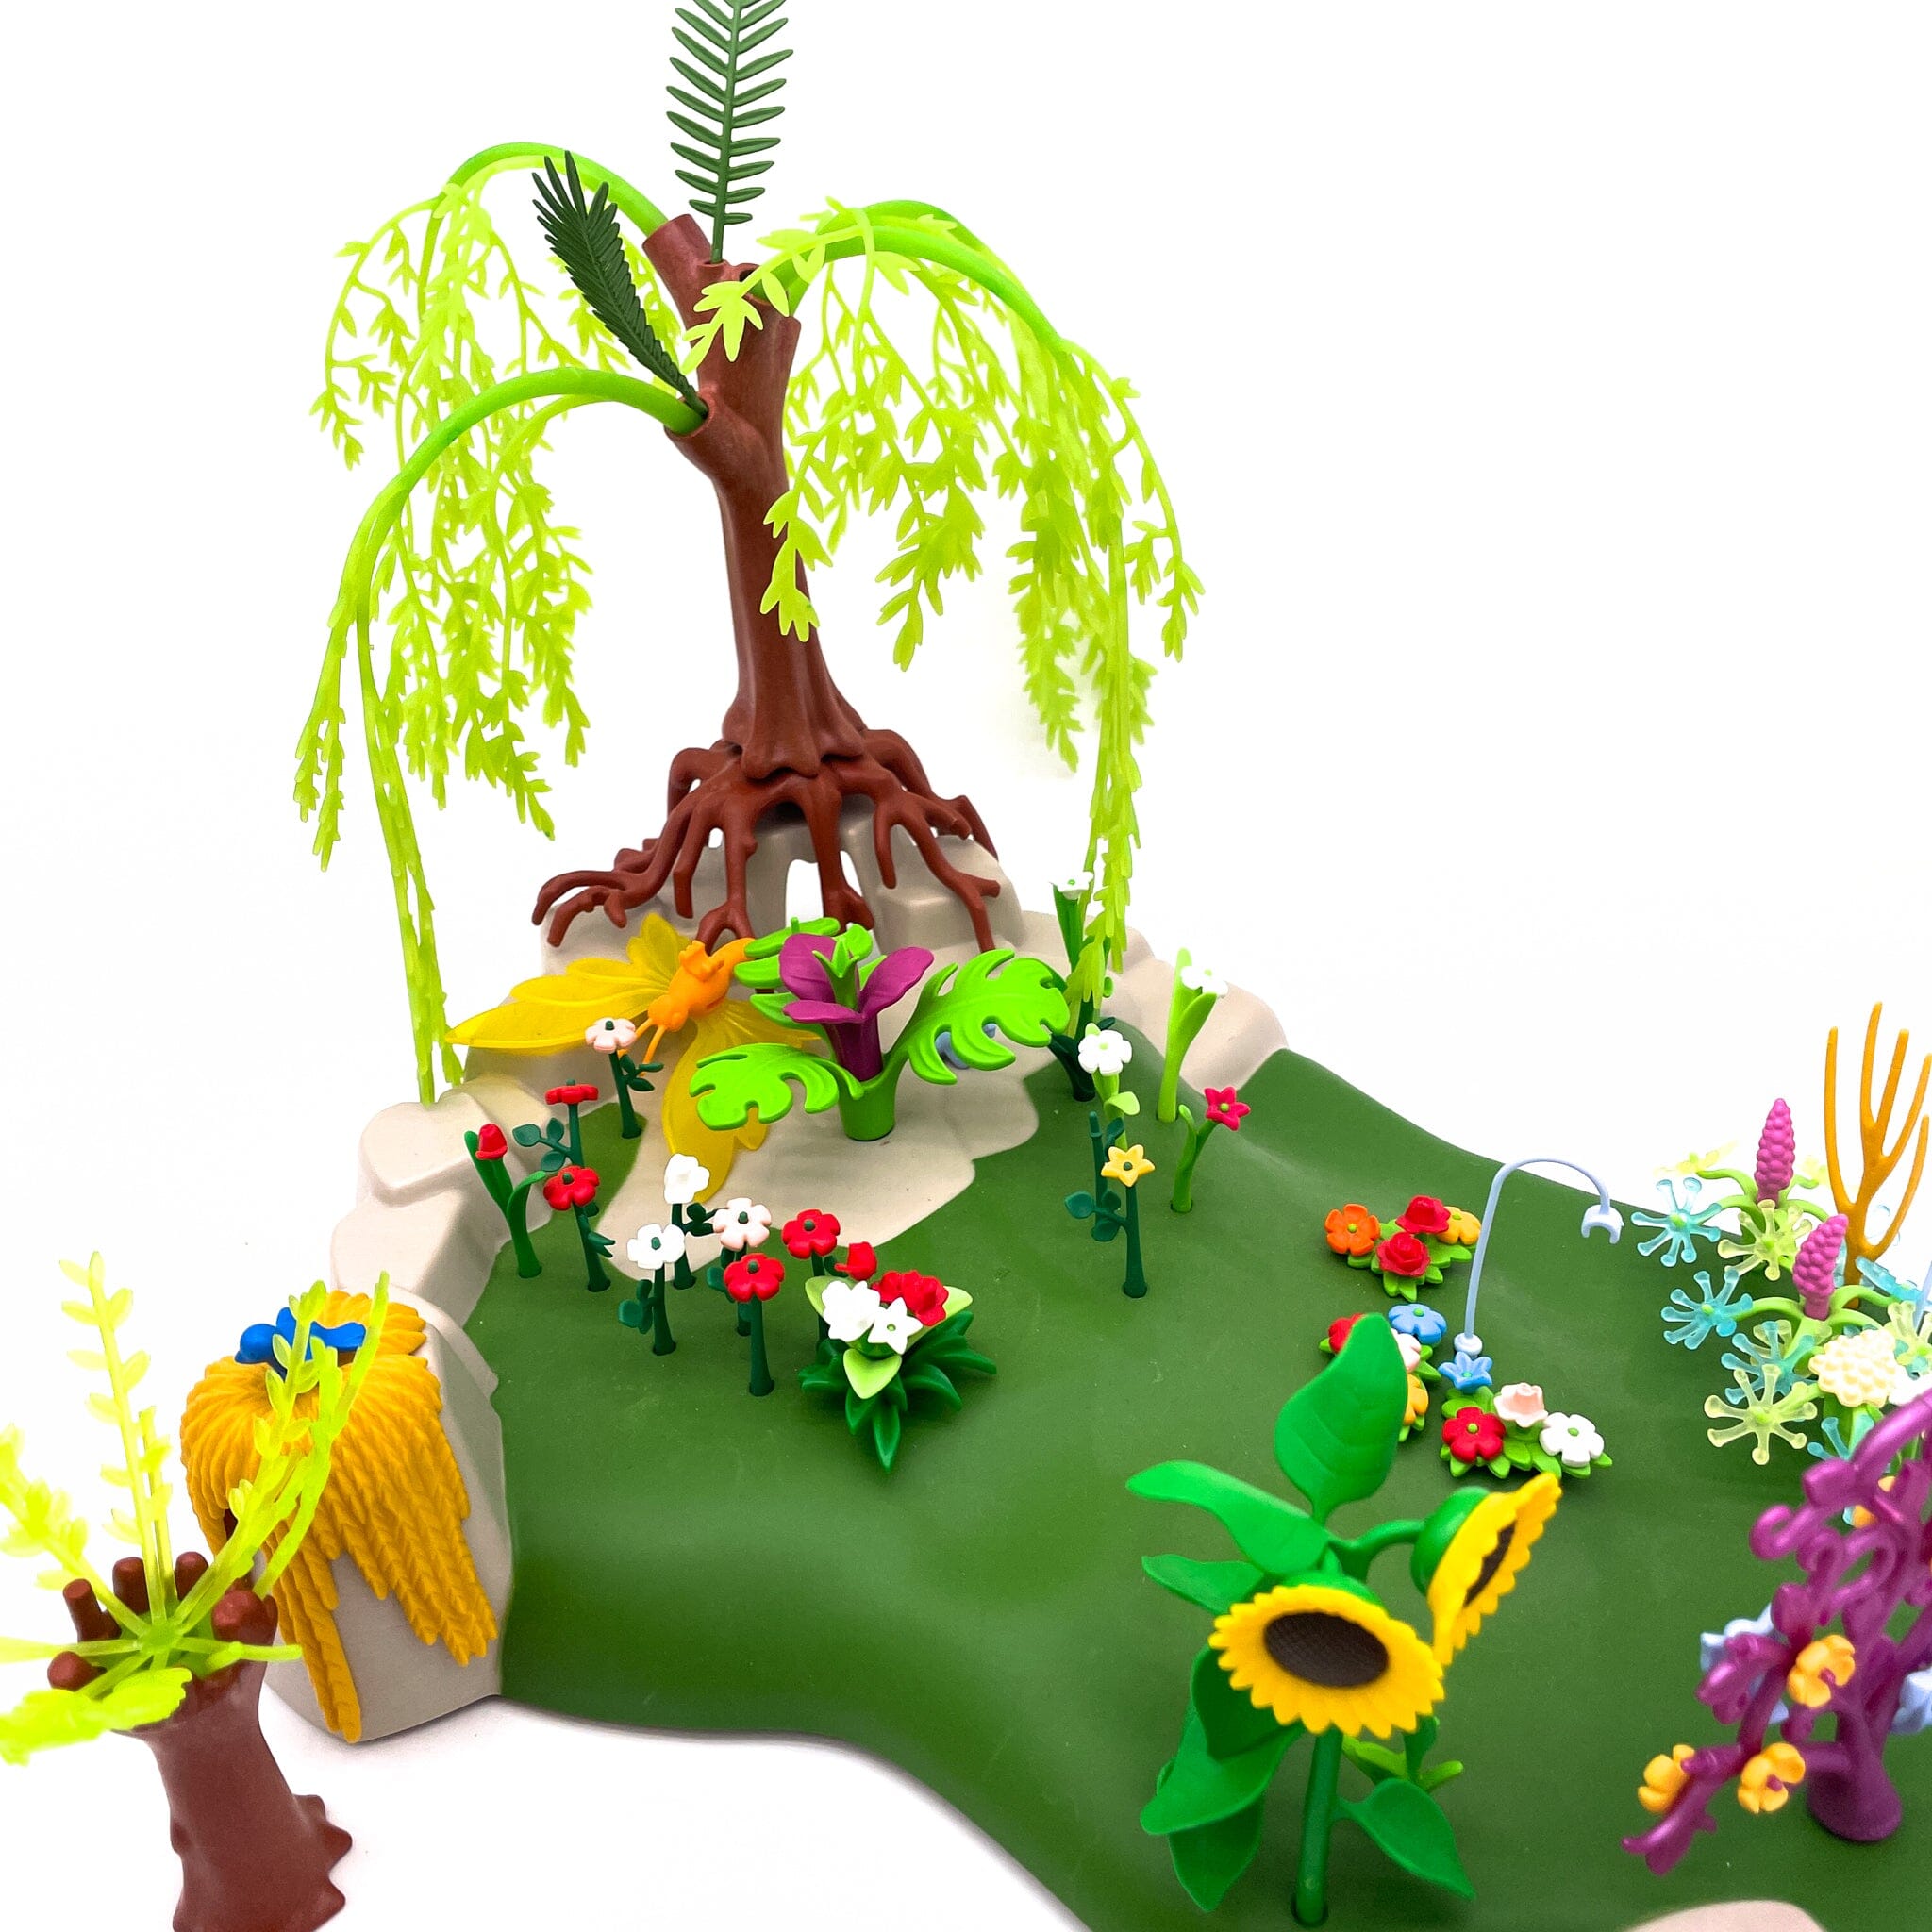 Playmobil set féérique paysage fleuri Jeux d'imagination Circule 